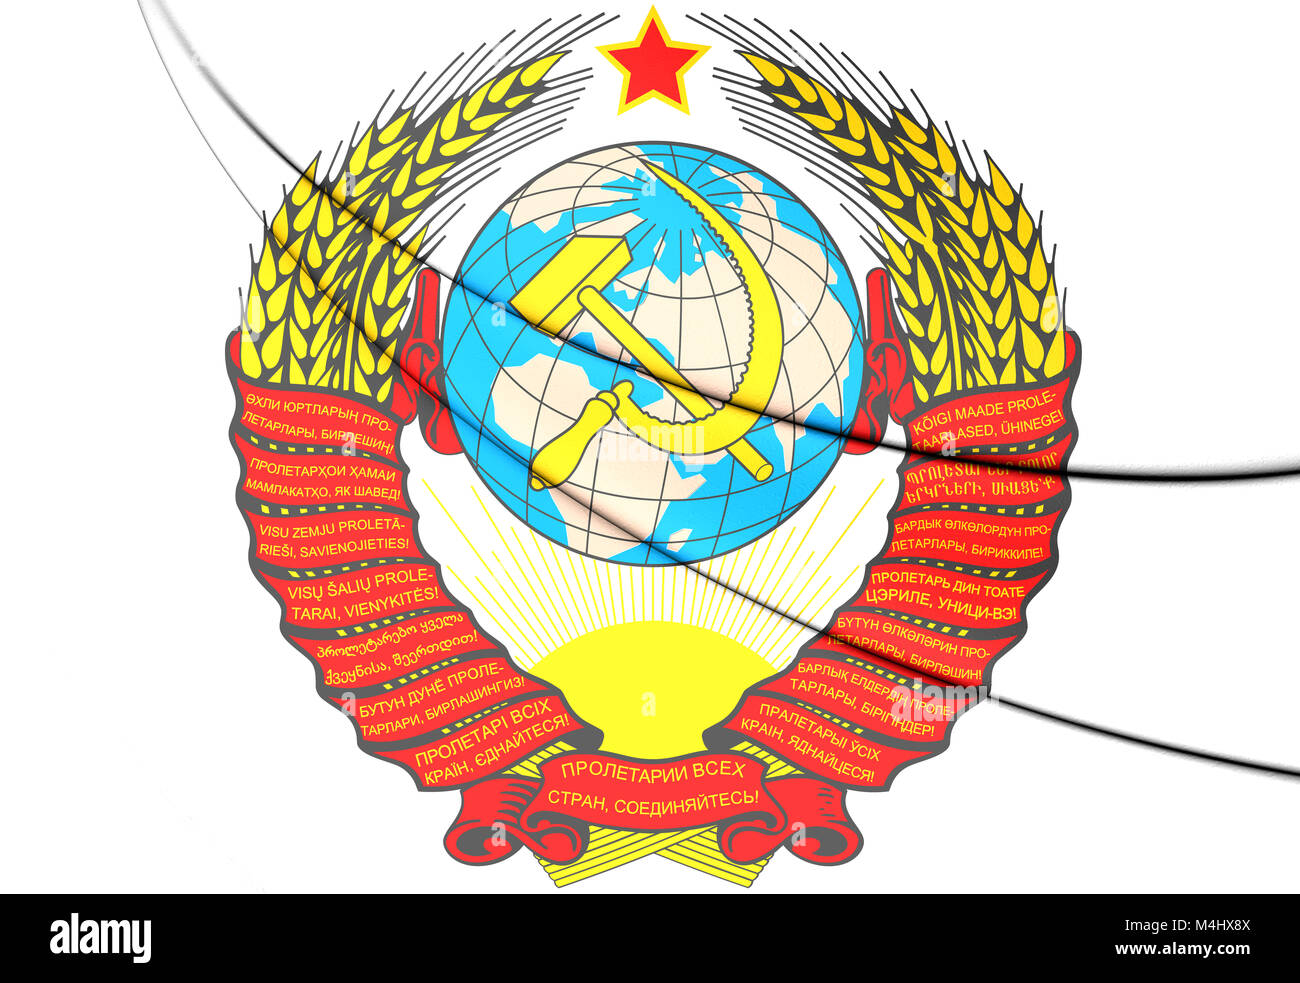 Ребус с гербом СССР И Р